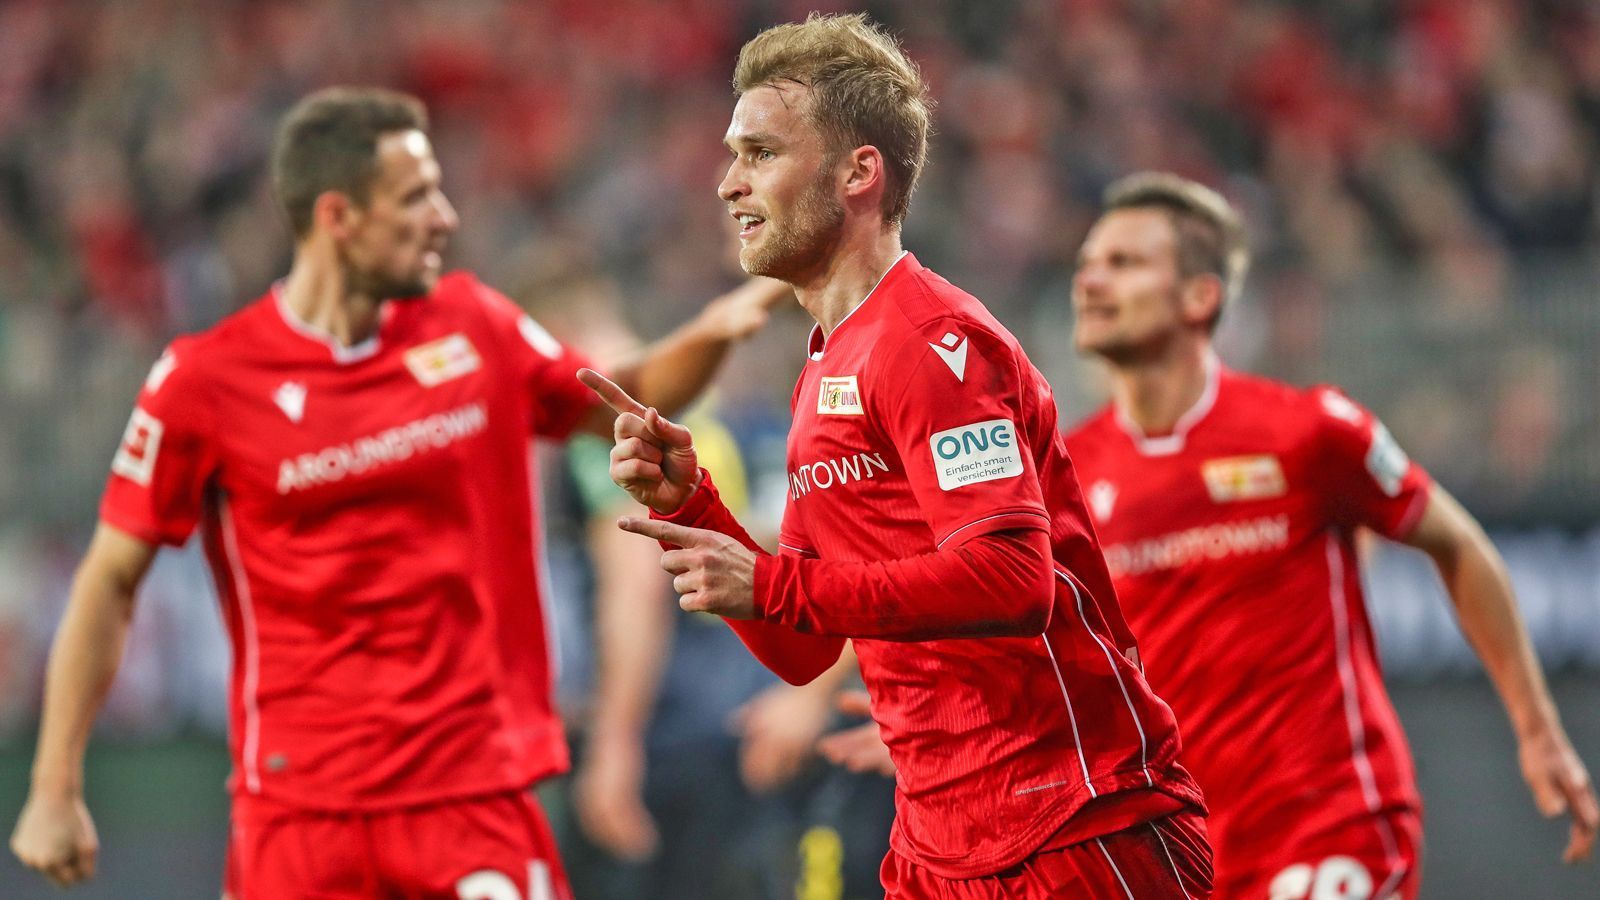 
                <strong>Platz 11: 1. FC Union Berlin - 30 Punkte</strong><br>
                Die "Eisernen" gehörten vor der Coronapause zu den positiven Überraschungen in der Saison 2019/2020. Trotzdem ist Union mit acht Punkten Vorsprung auf den Relegationsplatz noch nicht durch. Aus den letzten drei Spielen vor der Unterbrechung holte der Aufsteiger nur einen Punkt, in den kommenden Wochen warten das Heimspiel gegen den FC Bayern und das Derby bei Hertha BSC. Weiteres Restprogramm: Mainz (H), Gladbach (A), Schalke (H), Köln (A), Paderborn (H), Hoffenheim (A), Düsseldorf (H).ran.de-Prognose: Union hat noch drei Heimspiele gegen die direkte Konkurrenz - und gegen die punktet das Team von Trainer Urs Fischer besonders gern. Bleibt die "Alte Försterei" eine Festung, haben die "Eisernen" mit dem Abstieg nichts mehr zu tun. 
              